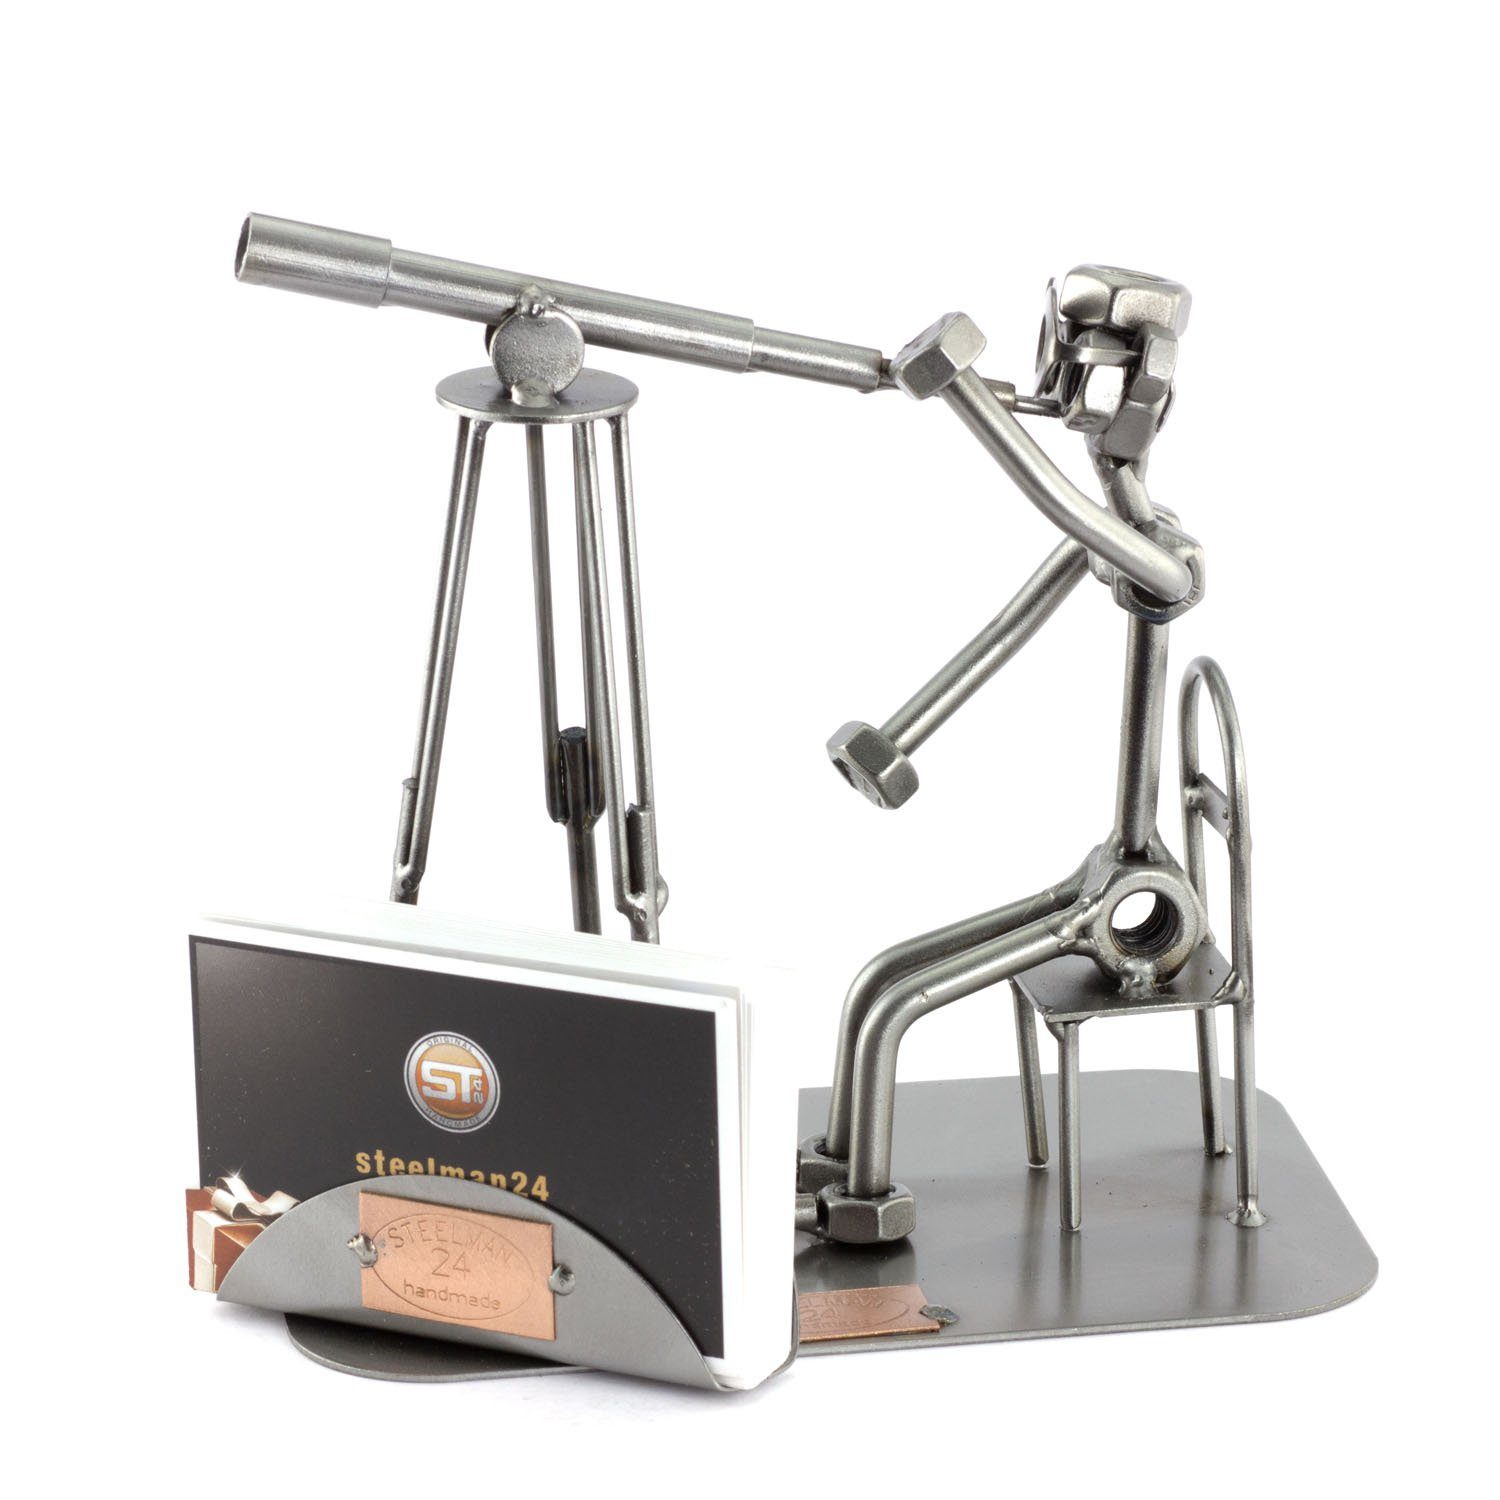 Steelman24 Dekofigur Steelman24 - Astronome avec Porte-Cartes De Visite - Figurine de metal